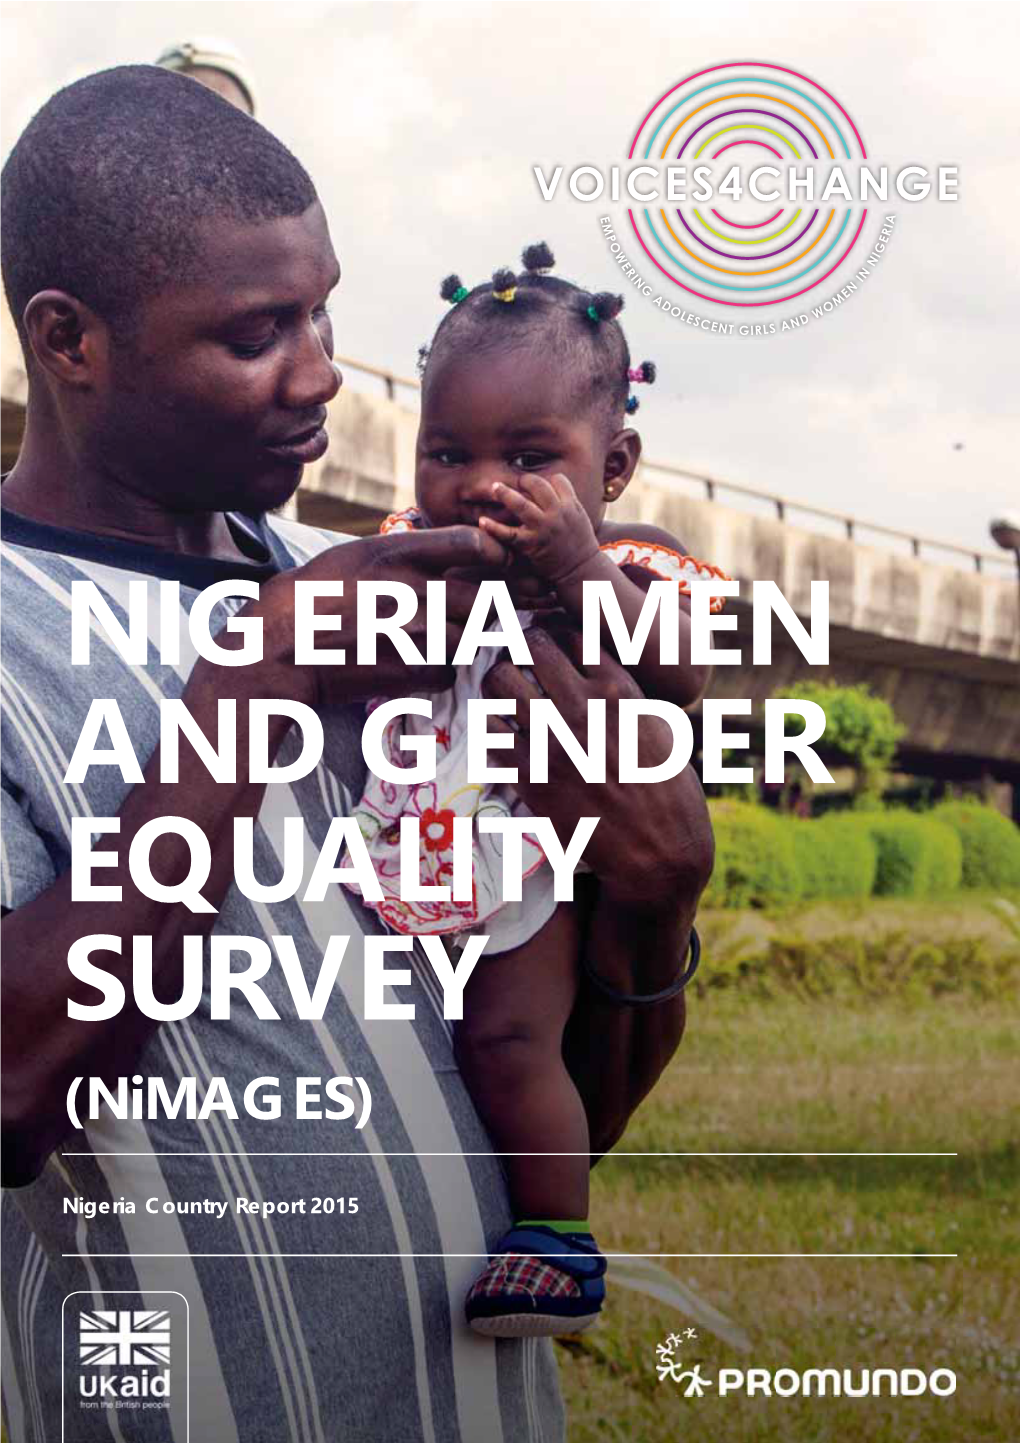 NIGERIA MEN and GENDER EQUALITY SURVEY (Nimages)